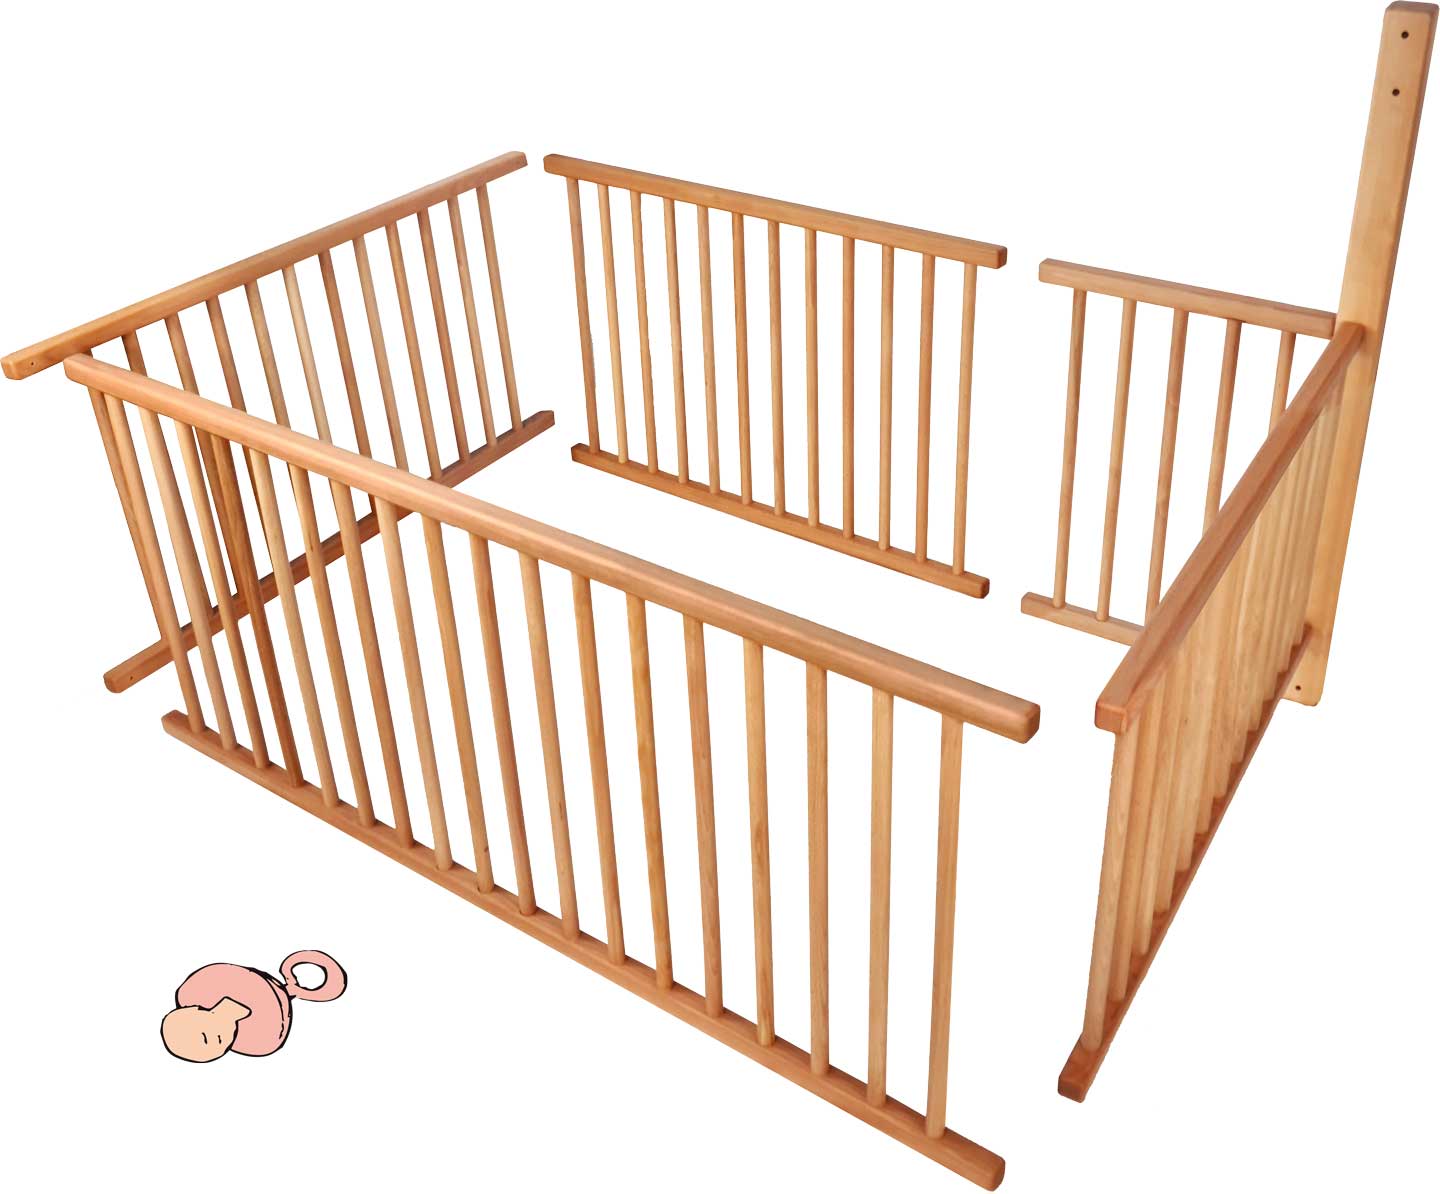 Zestaw siatek dla dziecka do łóżka piętrowego ze standardowymi stopami (196 cm) i drabinką A na 3/4 powierzchni leżenia wraz z dodatkowo wymaganą belką**